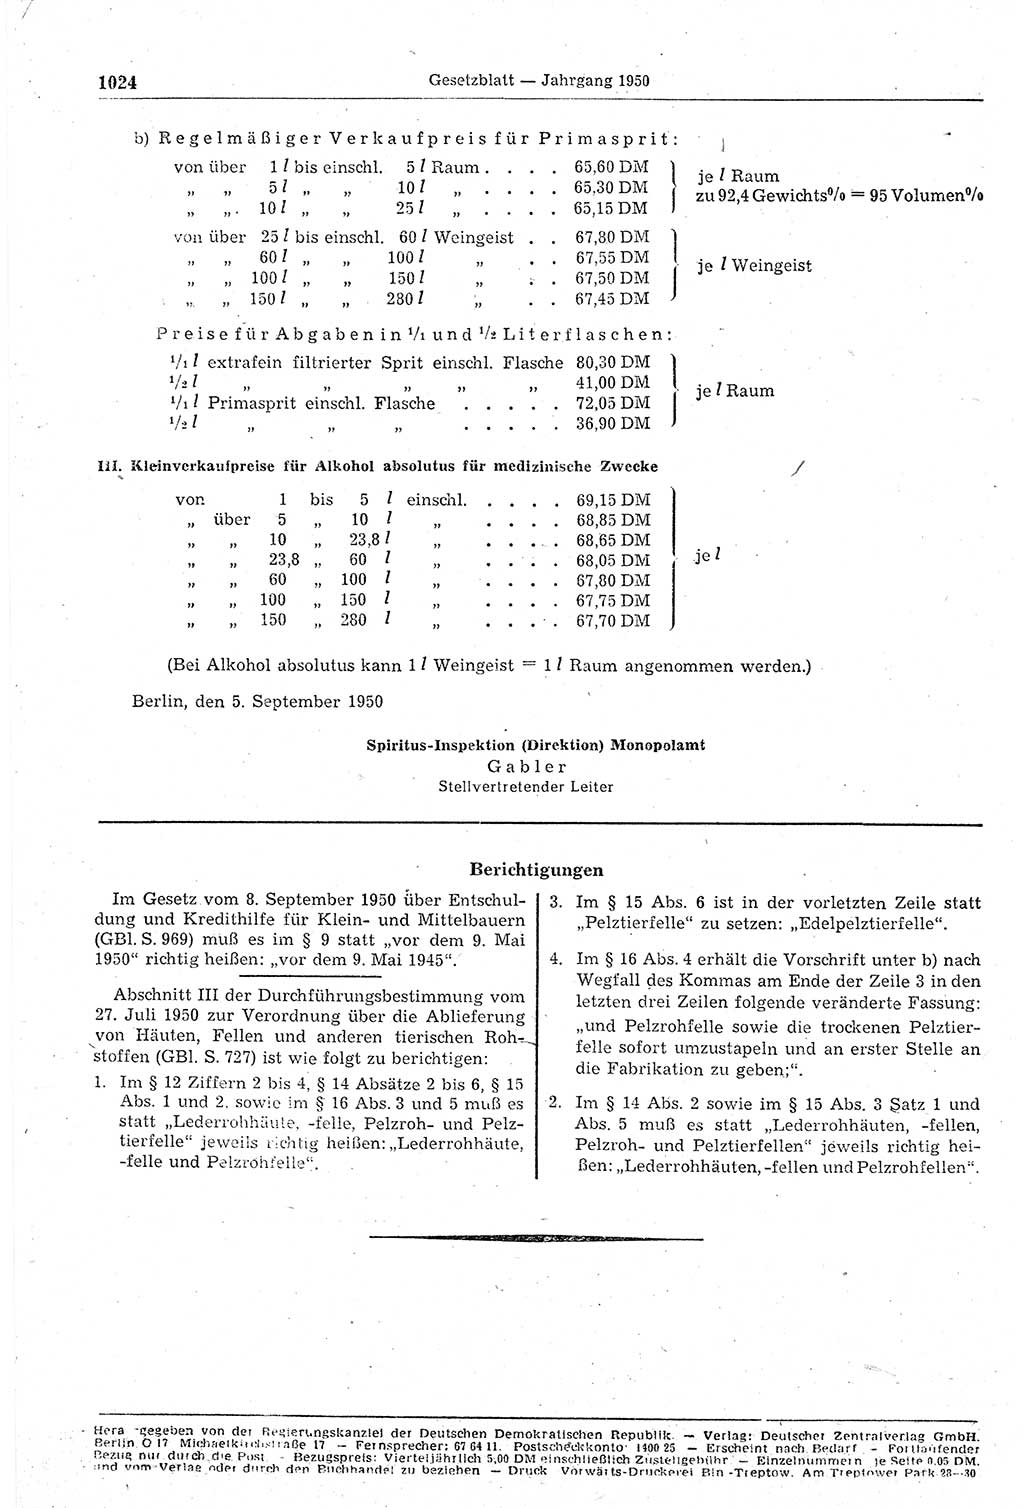 Gesetzblatt (GBl.) der Deutschen Demokratischen Republik (DDR) 1950, Seite 1024 (GBl. DDR 1950, S. 1024)